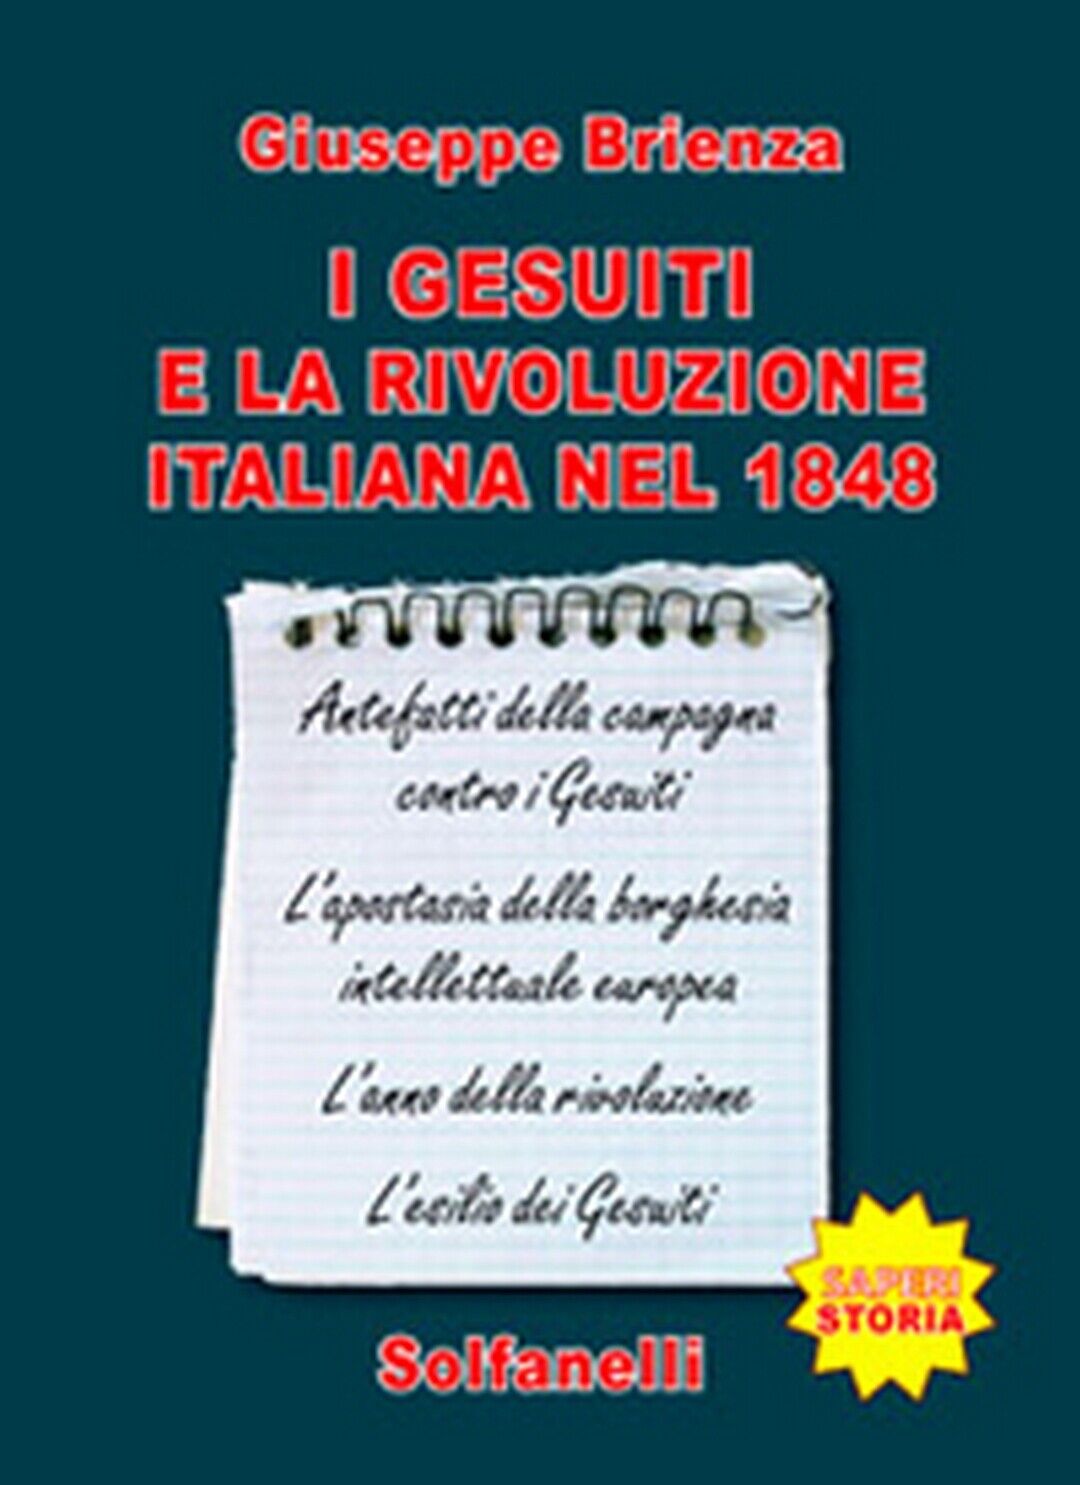 I GESUITI E LA RIVOLUZIONE ITALIANA NEL 1848  di Giuseppe Brienza,  Solfanelli 